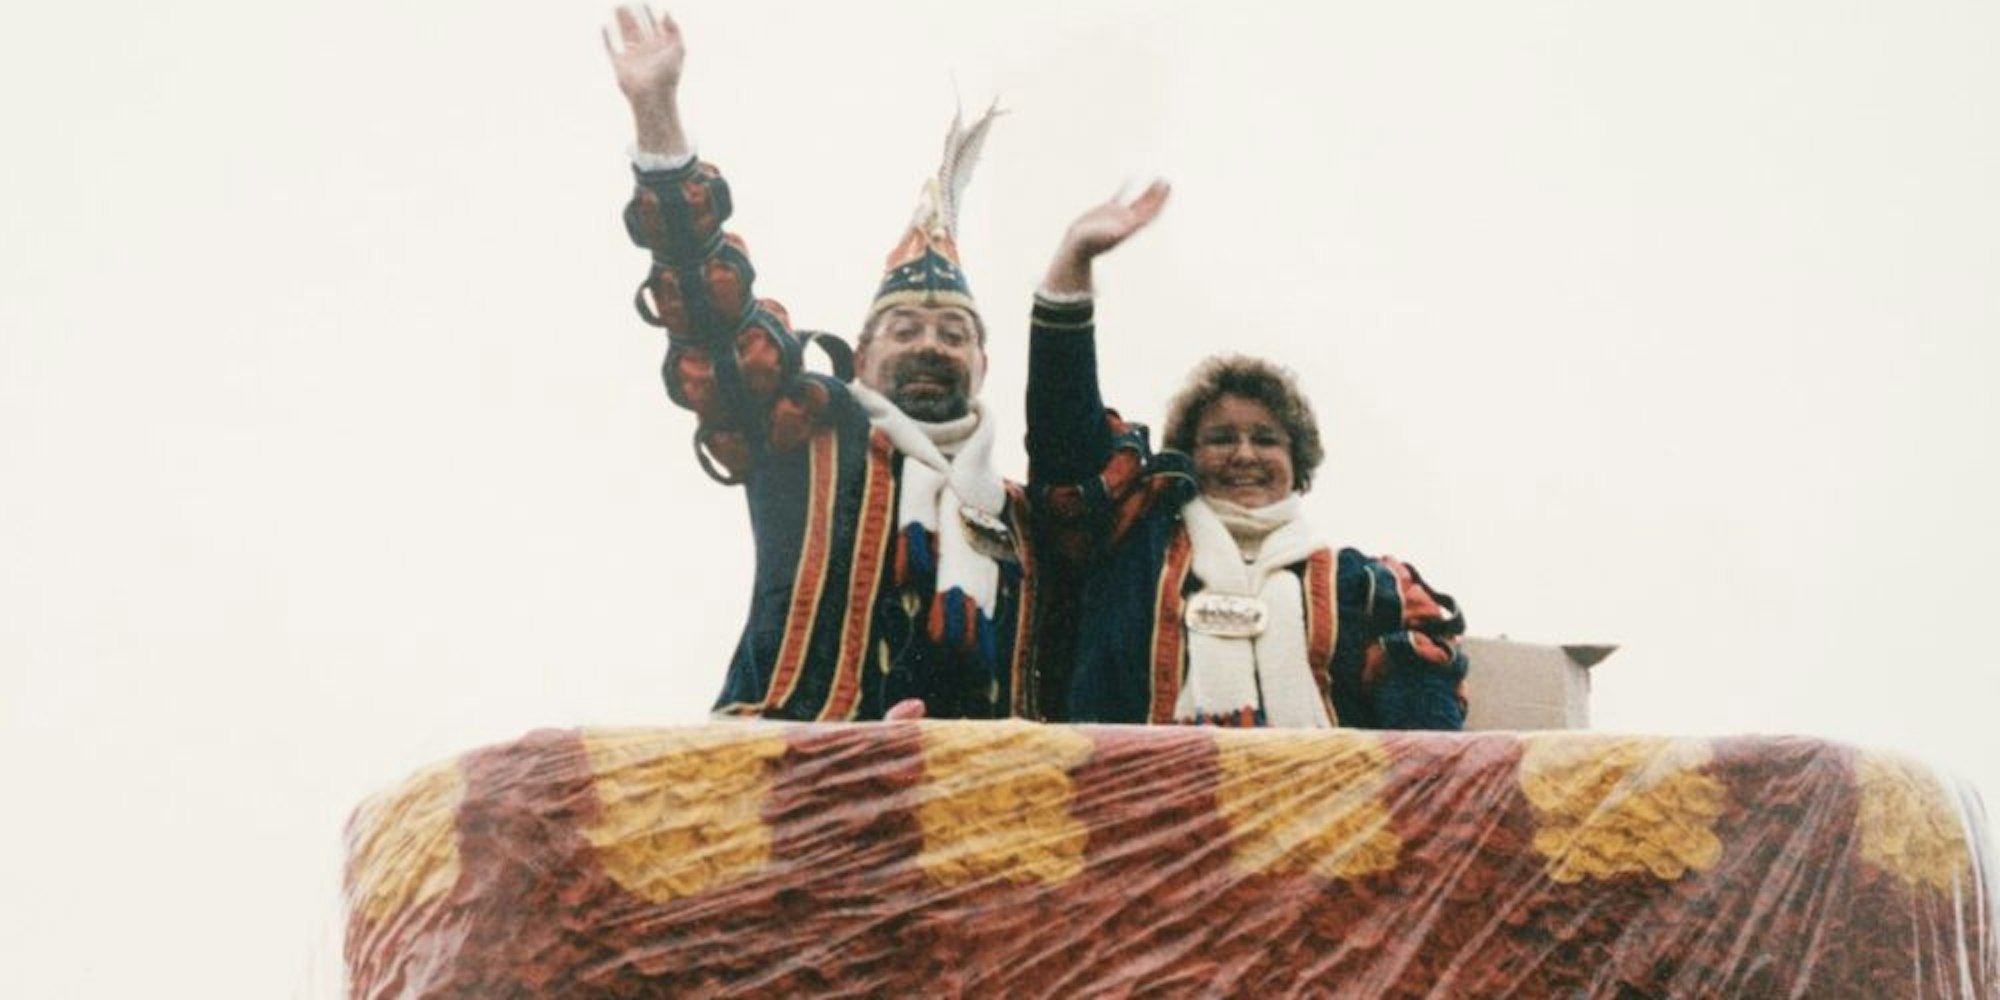 Meckenheimer Prinzenpaar: Als Prinz Jochen I. und Prinzessin Gaby I. haben die Eheleute Stiebitz regiert.